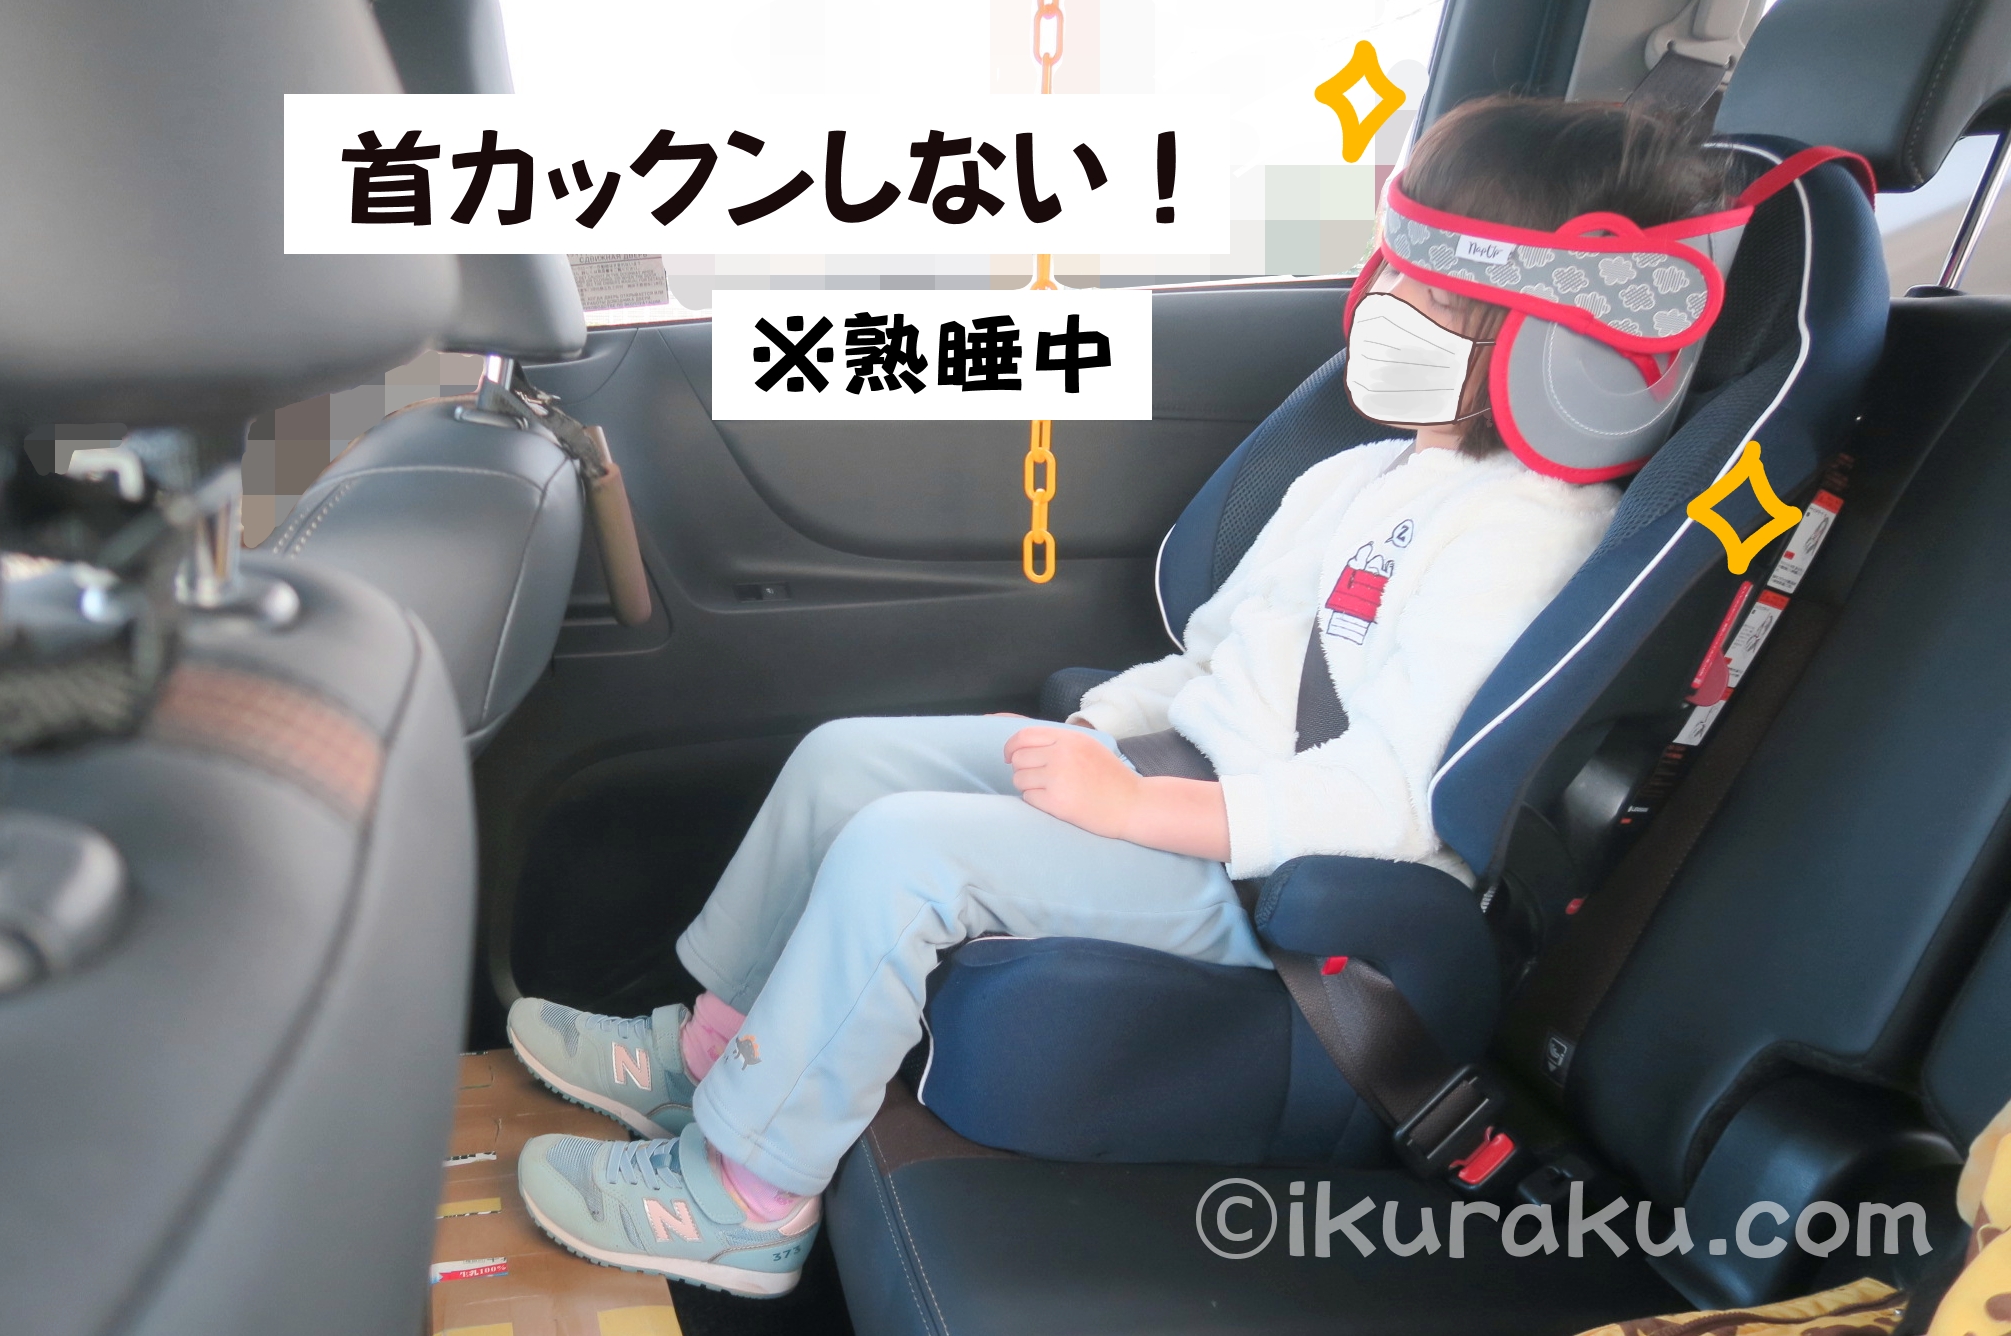 チャイルドシートで寝る子が「NapUpナップアップ うたたねサポート 日本育児」をつけると熟睡していても前のめり・首カックンしない